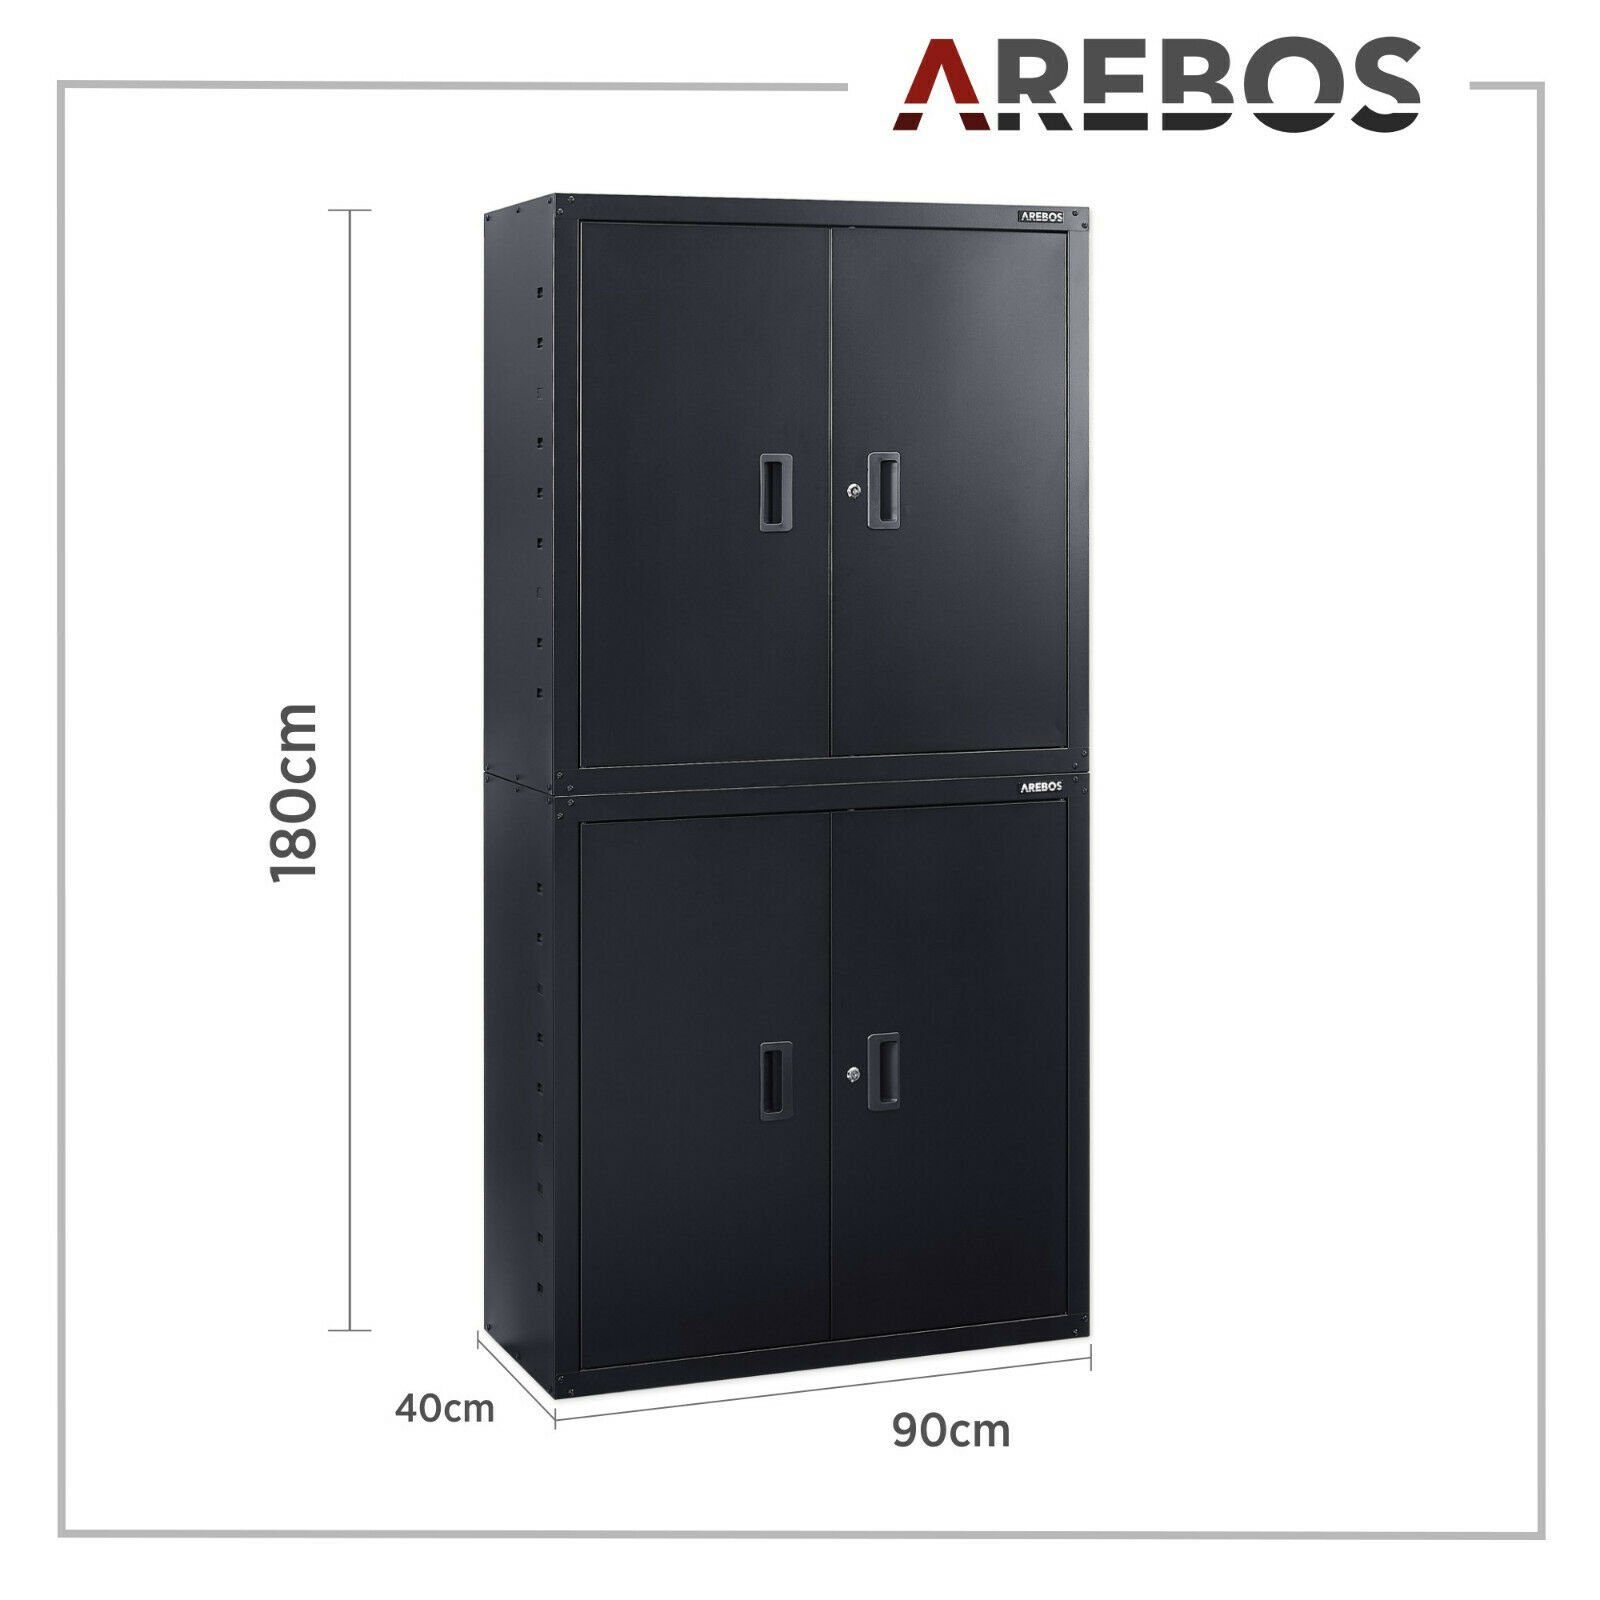 Arebos Aktenschrank 4 Türen, Einlegeböden Höhenverstellbaren inkl. Schwarz schwarz Schlüssel Sicherheitszylinderschloss (Set, Aktenschrank) 